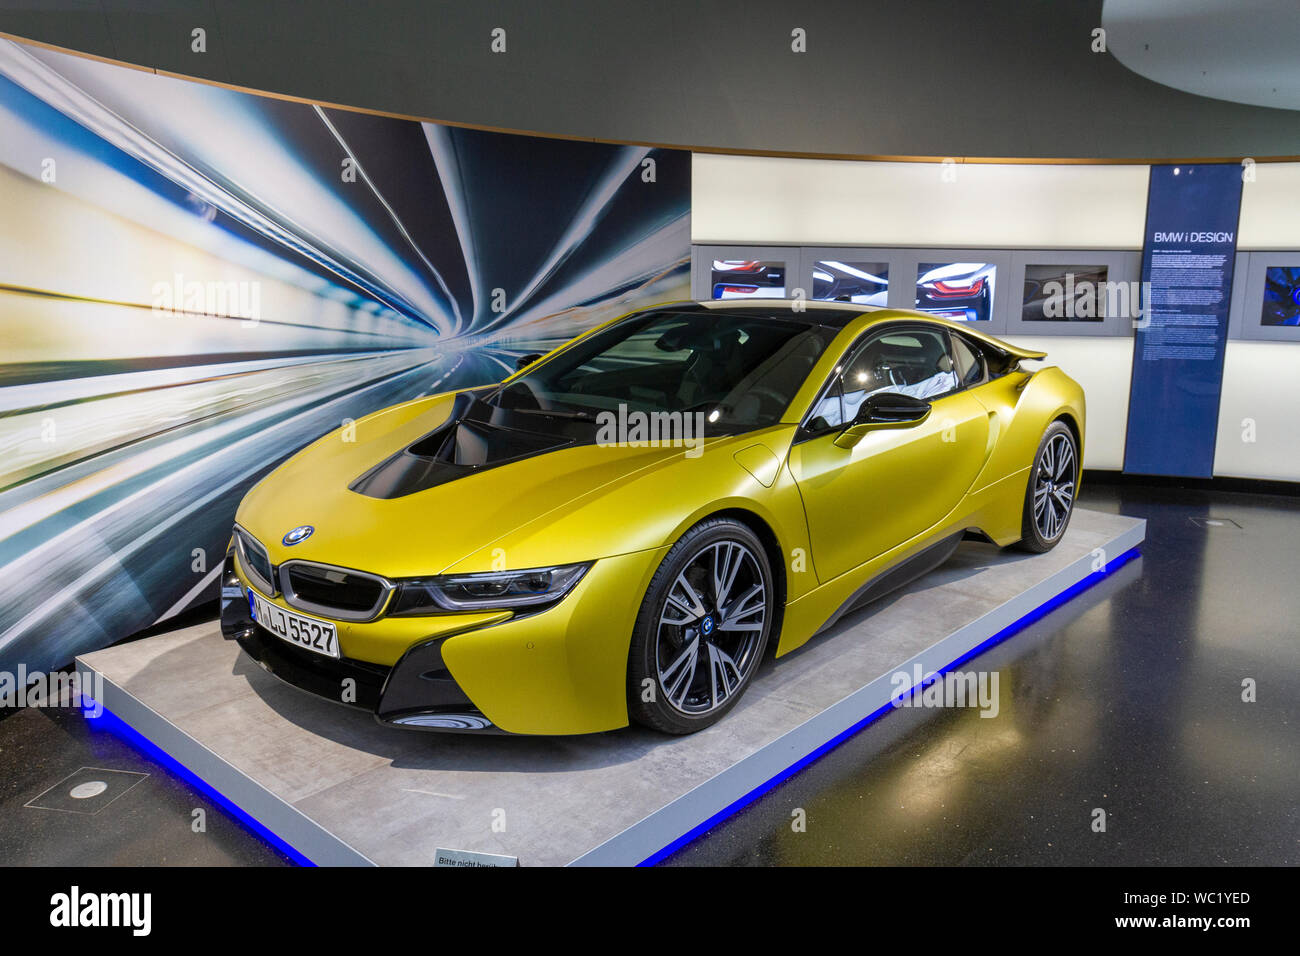 Una BMW i8 protonico giallo congelati Edition ibrido plug-in auto sportive in mostra al Museo BMW Monaco di Baviera, Germania. Foto Stock